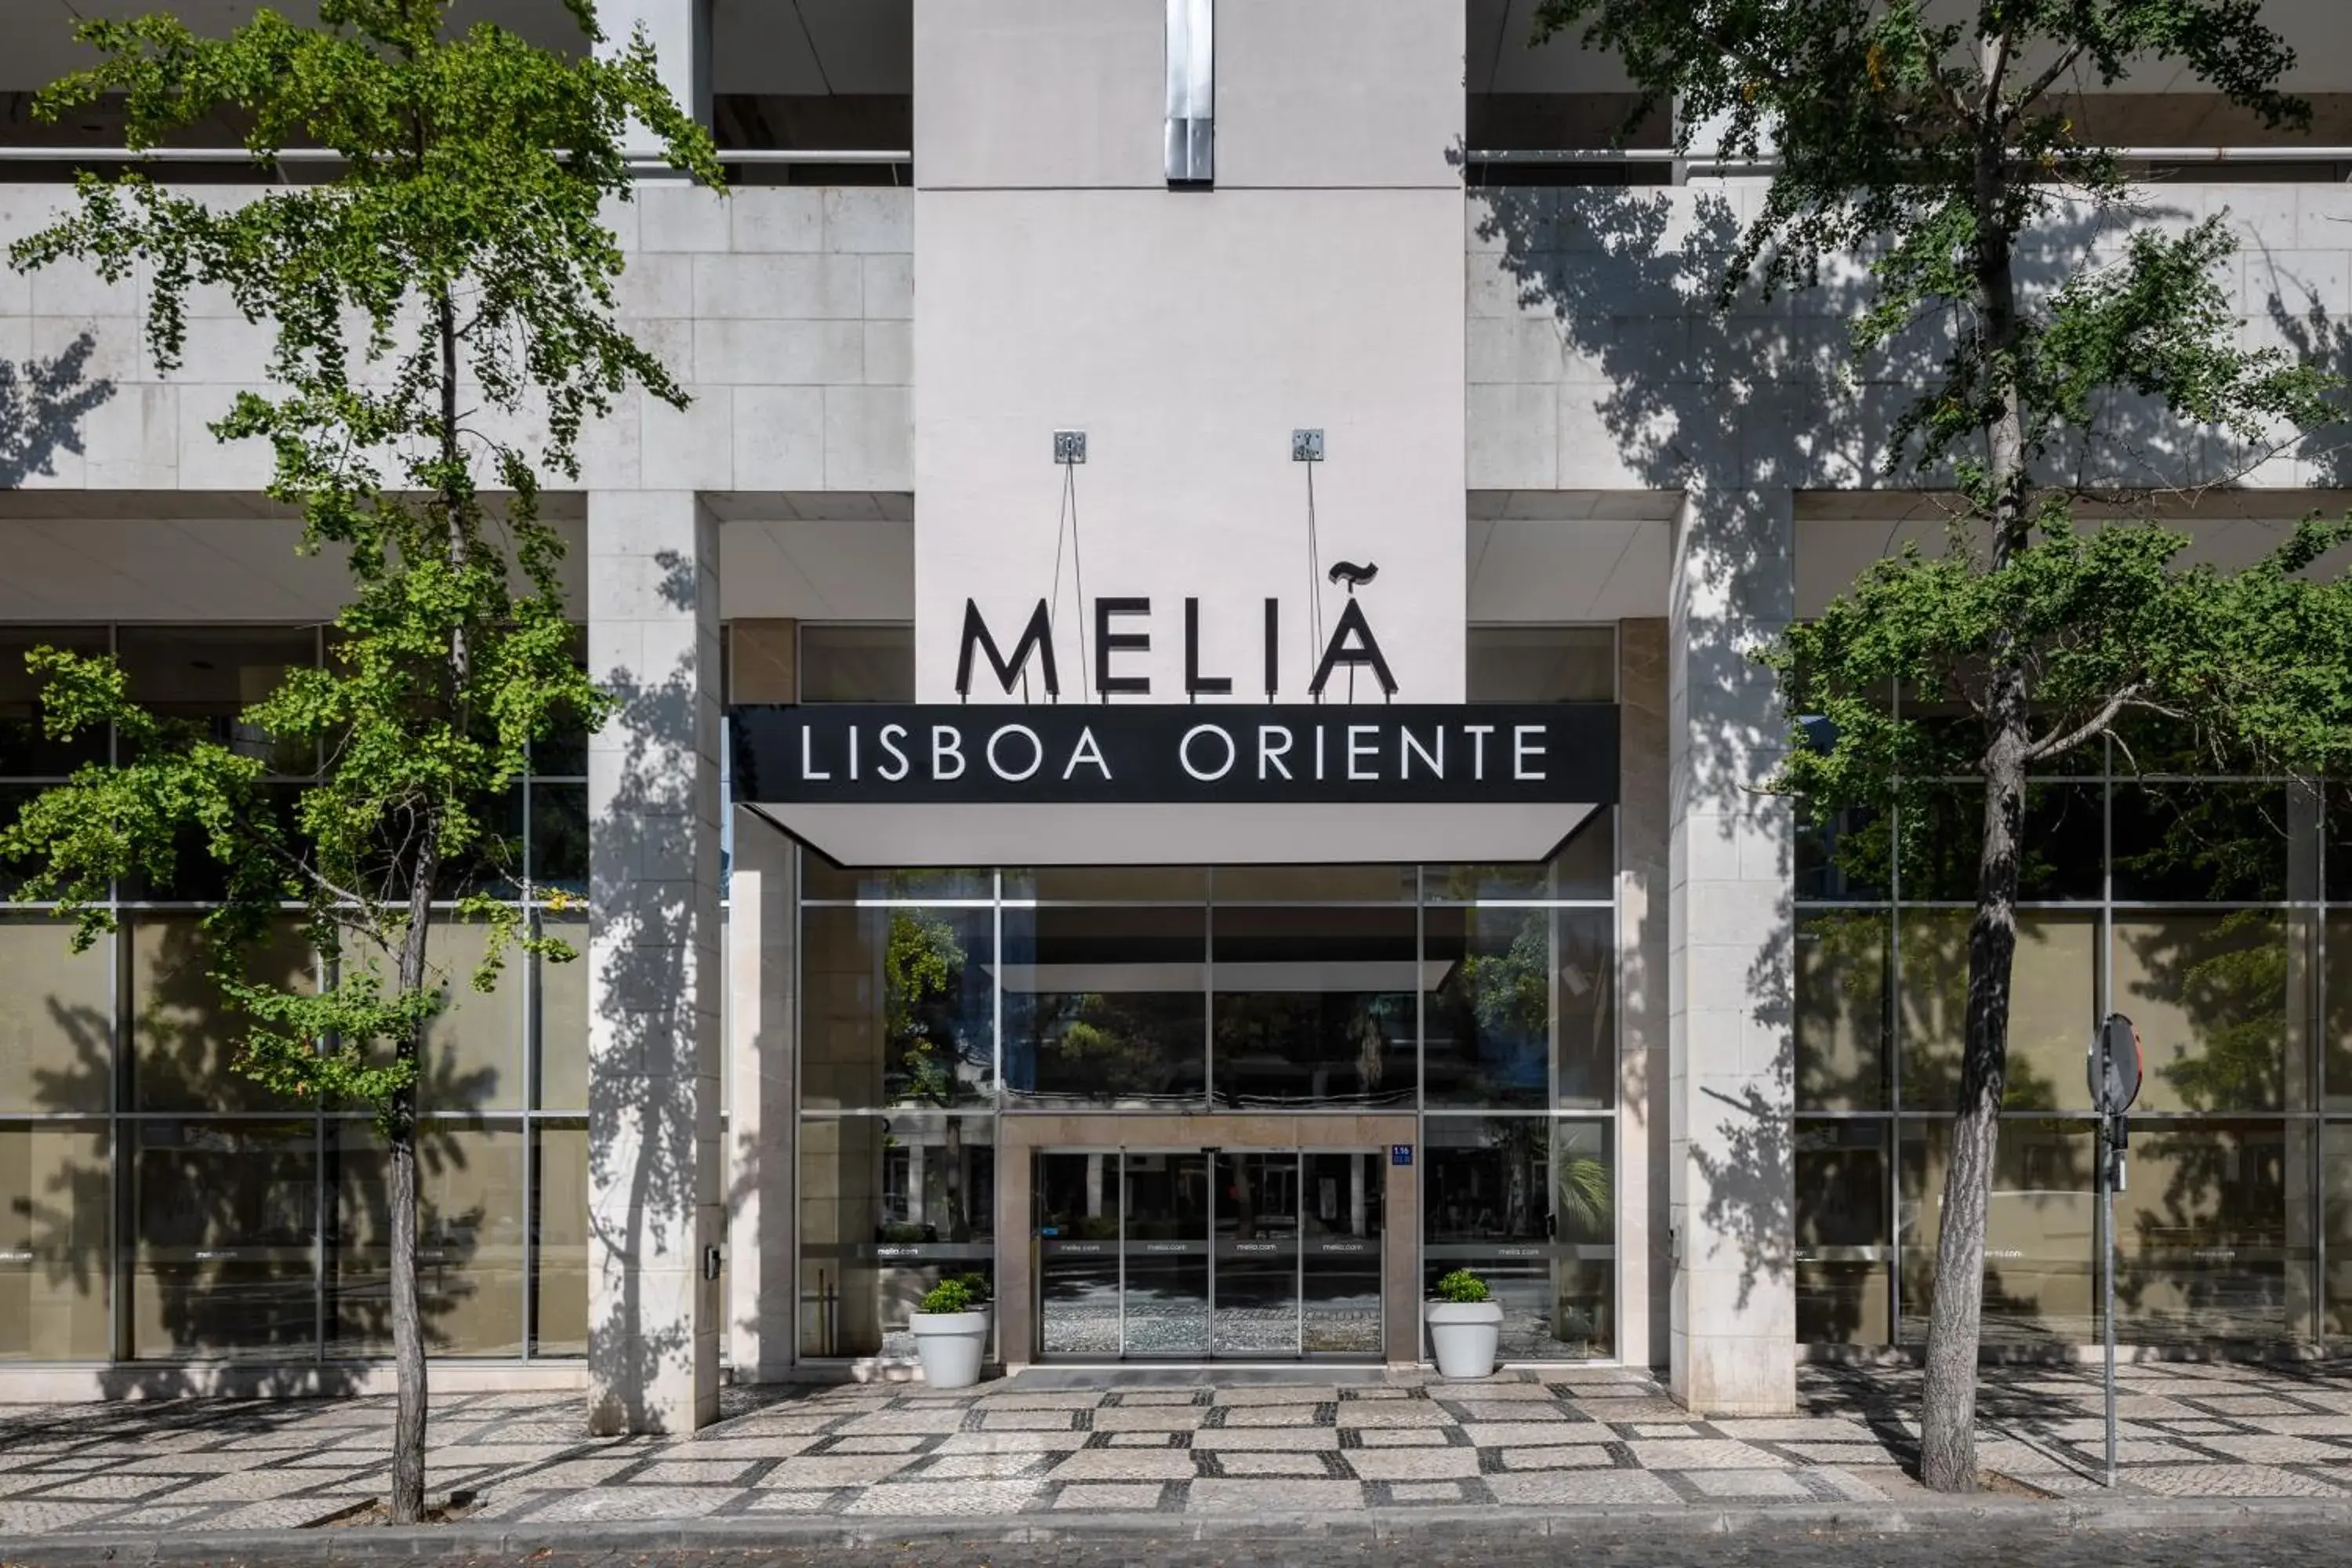 Property building in Melia Lisboa Oriente Hotel